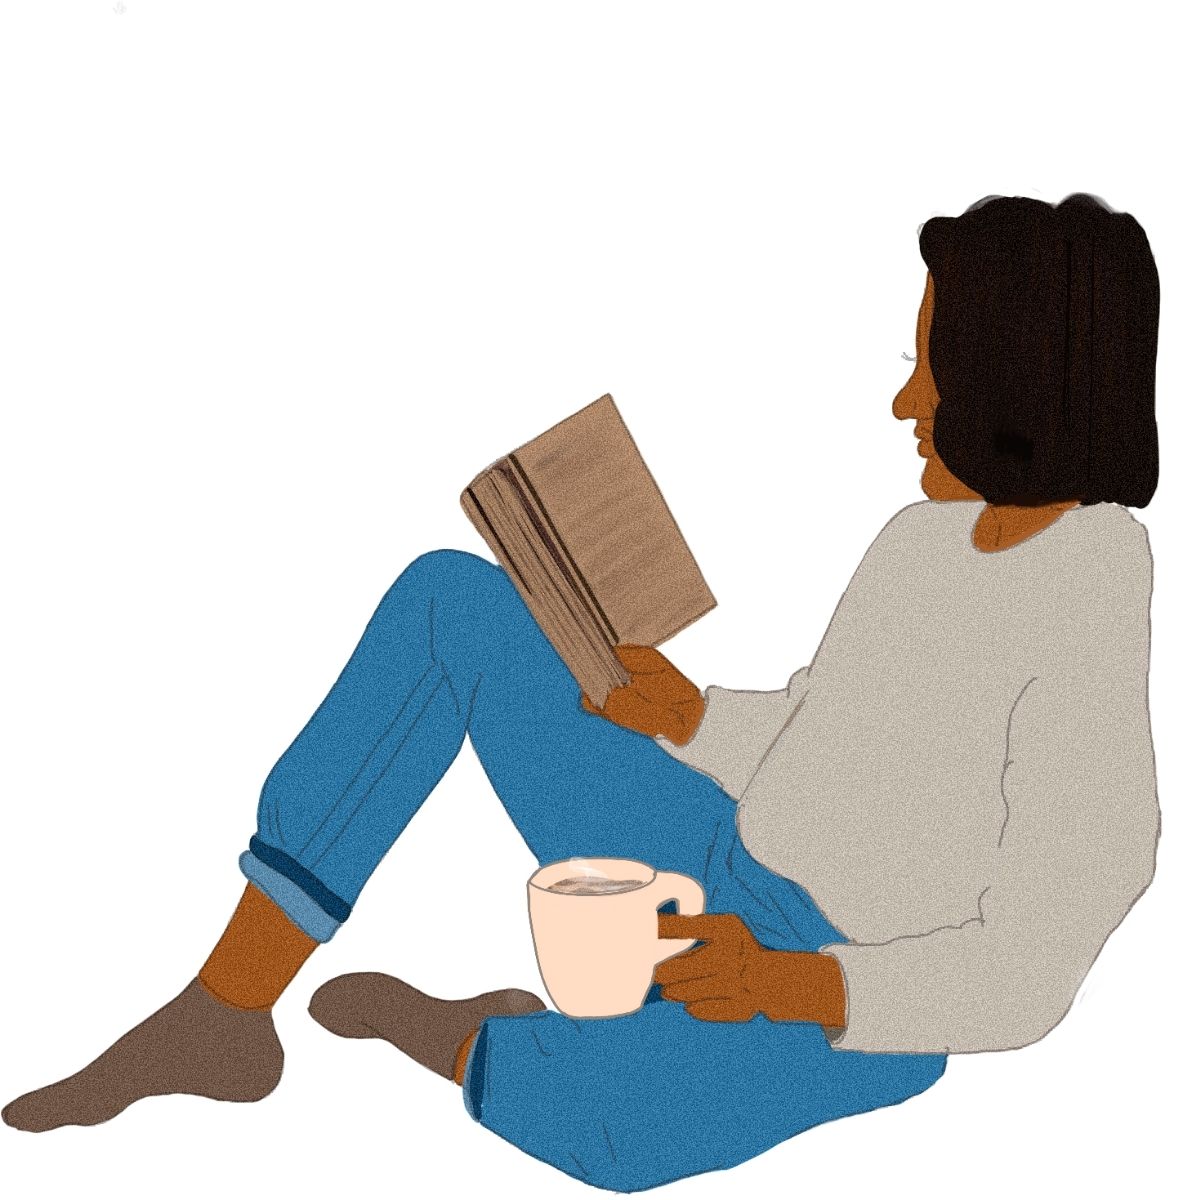 illustration einer sitzenden weiblich gelesenen person, mit dem rücken an wand lehnend, in der einen hand ein buch in der anderen hand eine tasse, ein bein aufgestellt zur ablage des buches